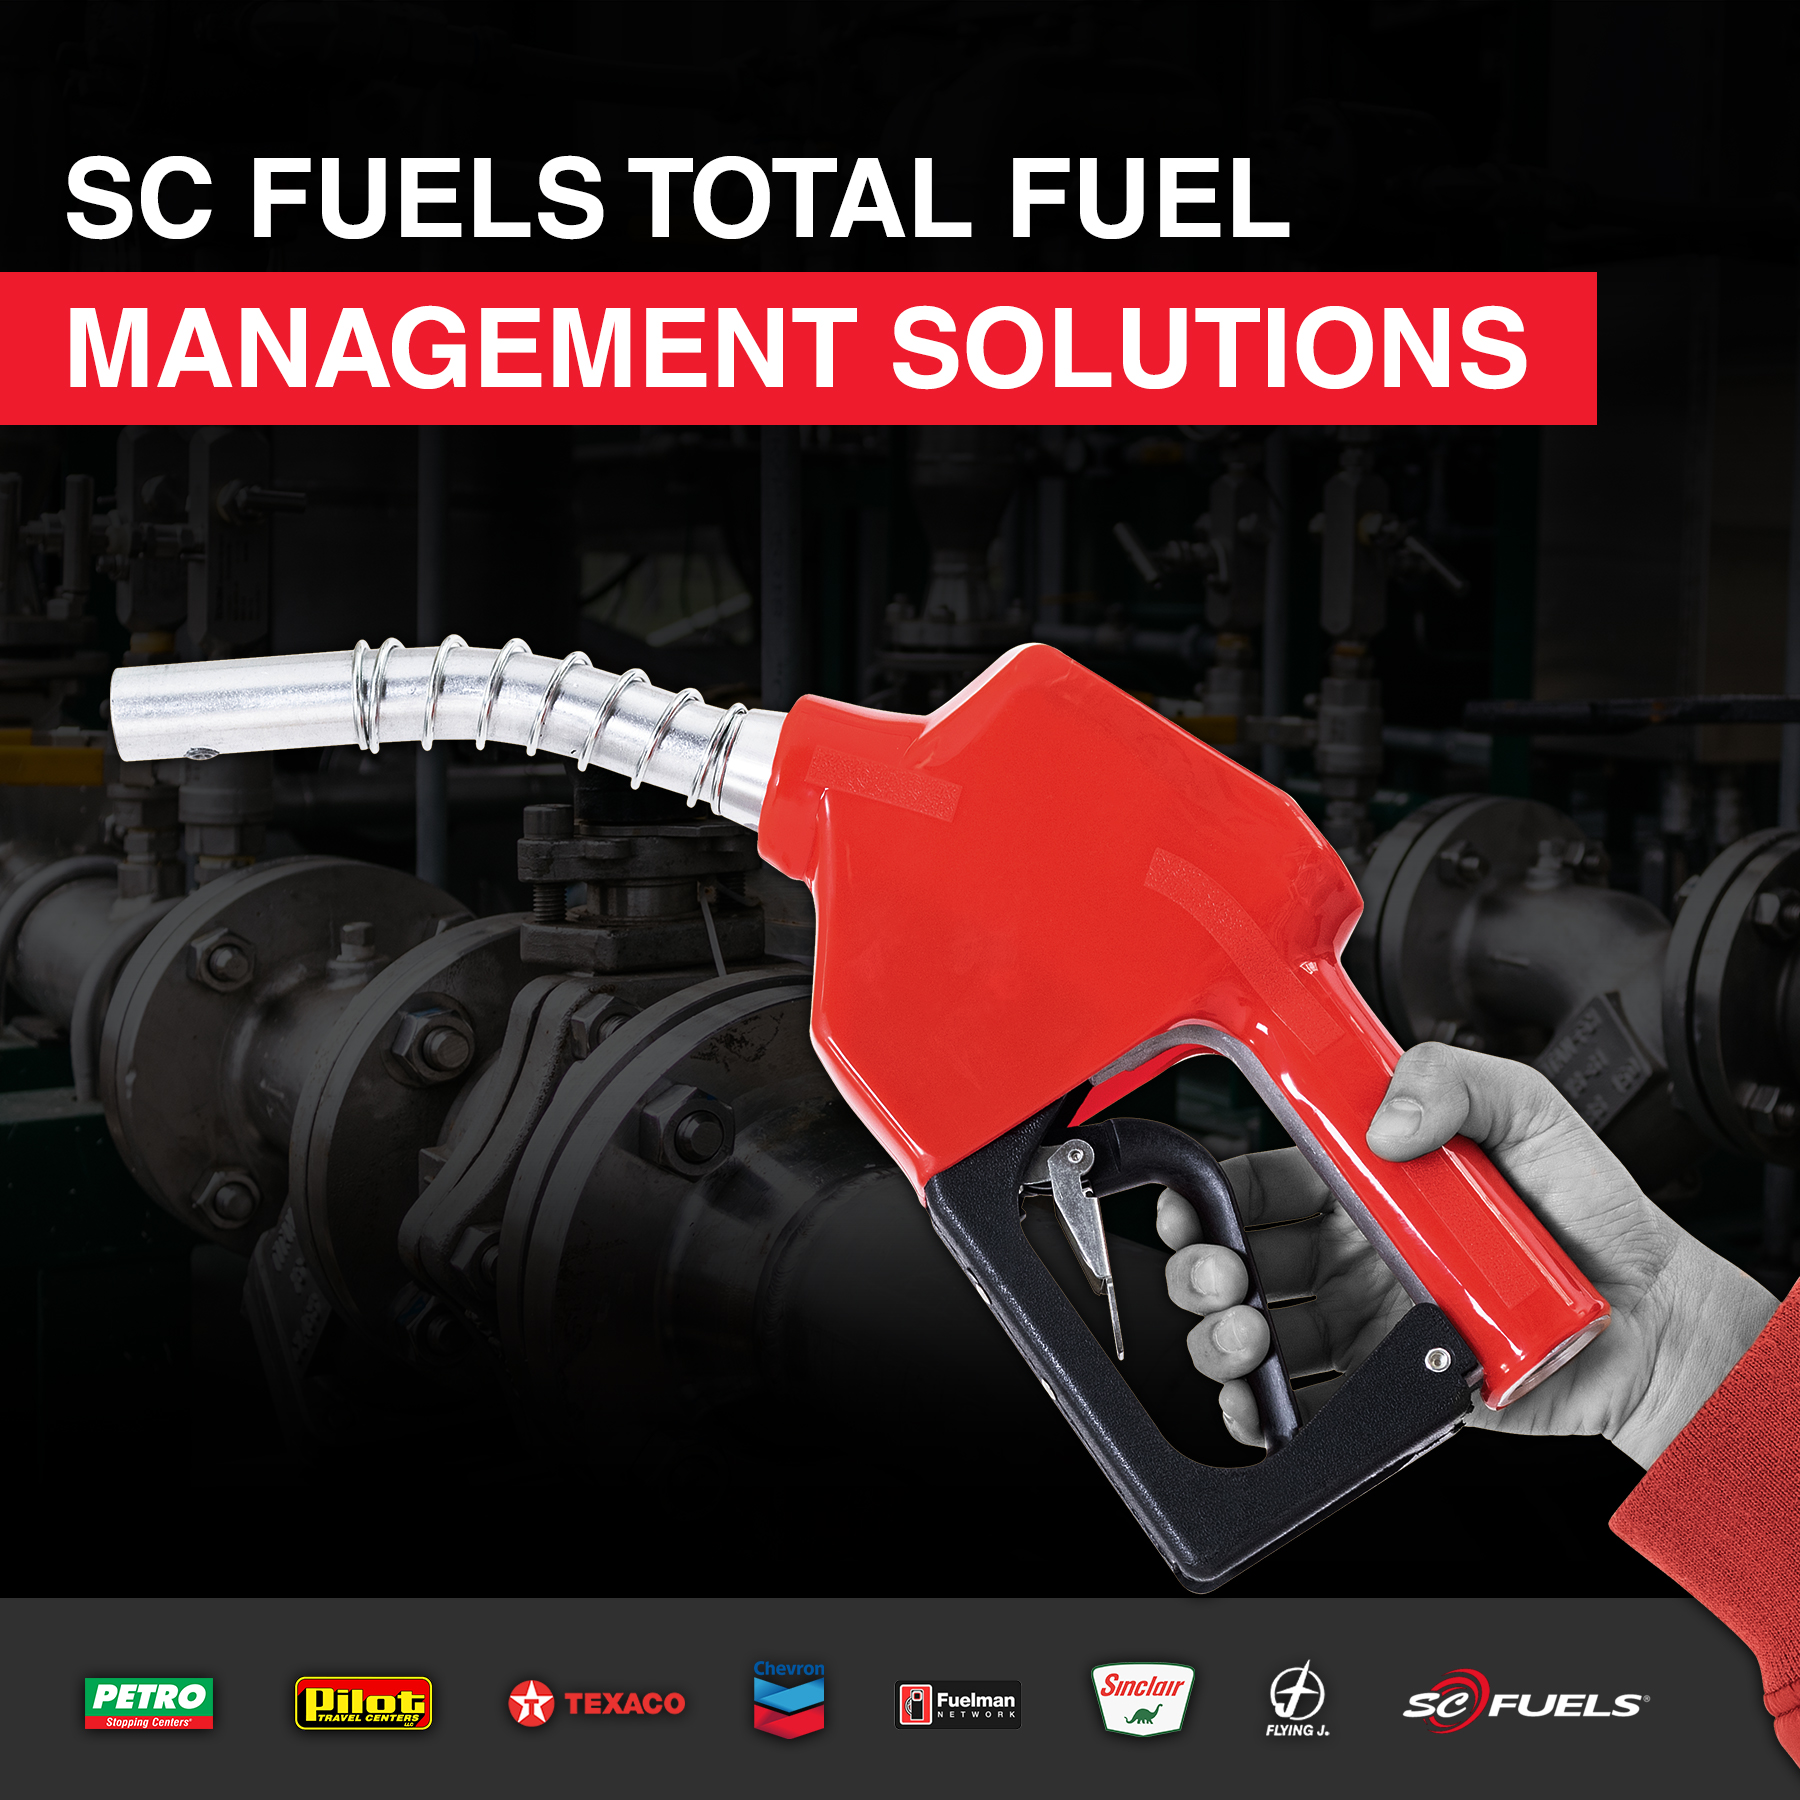 SC Fuels Fleet Management Fleet Cards